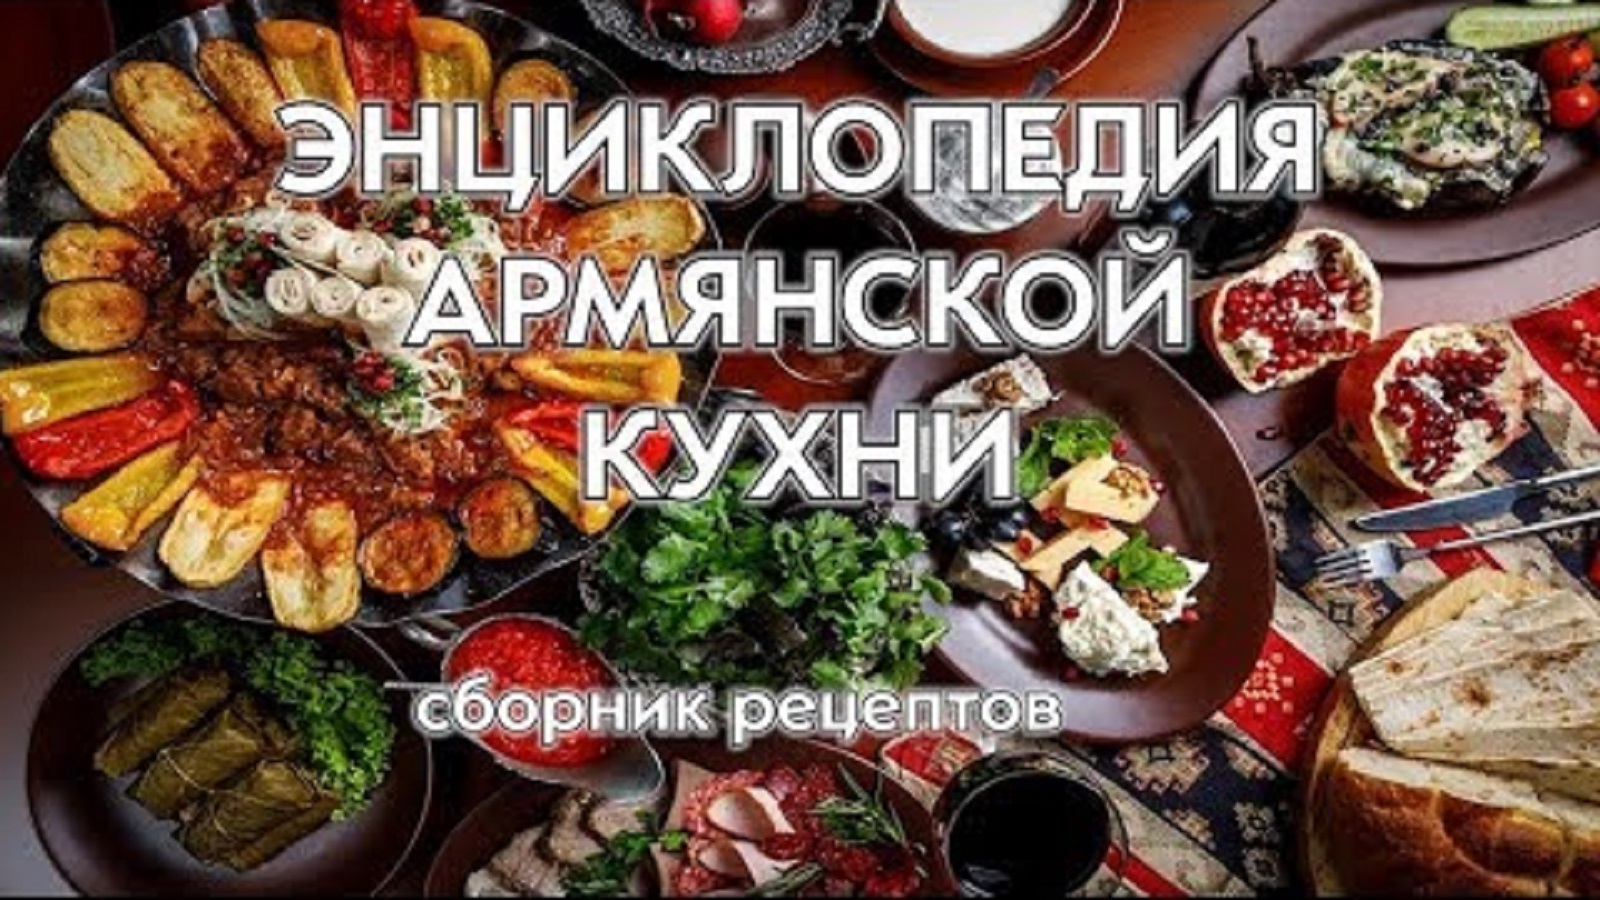 Энциклопедия армянской кухни. Сборник рецептов